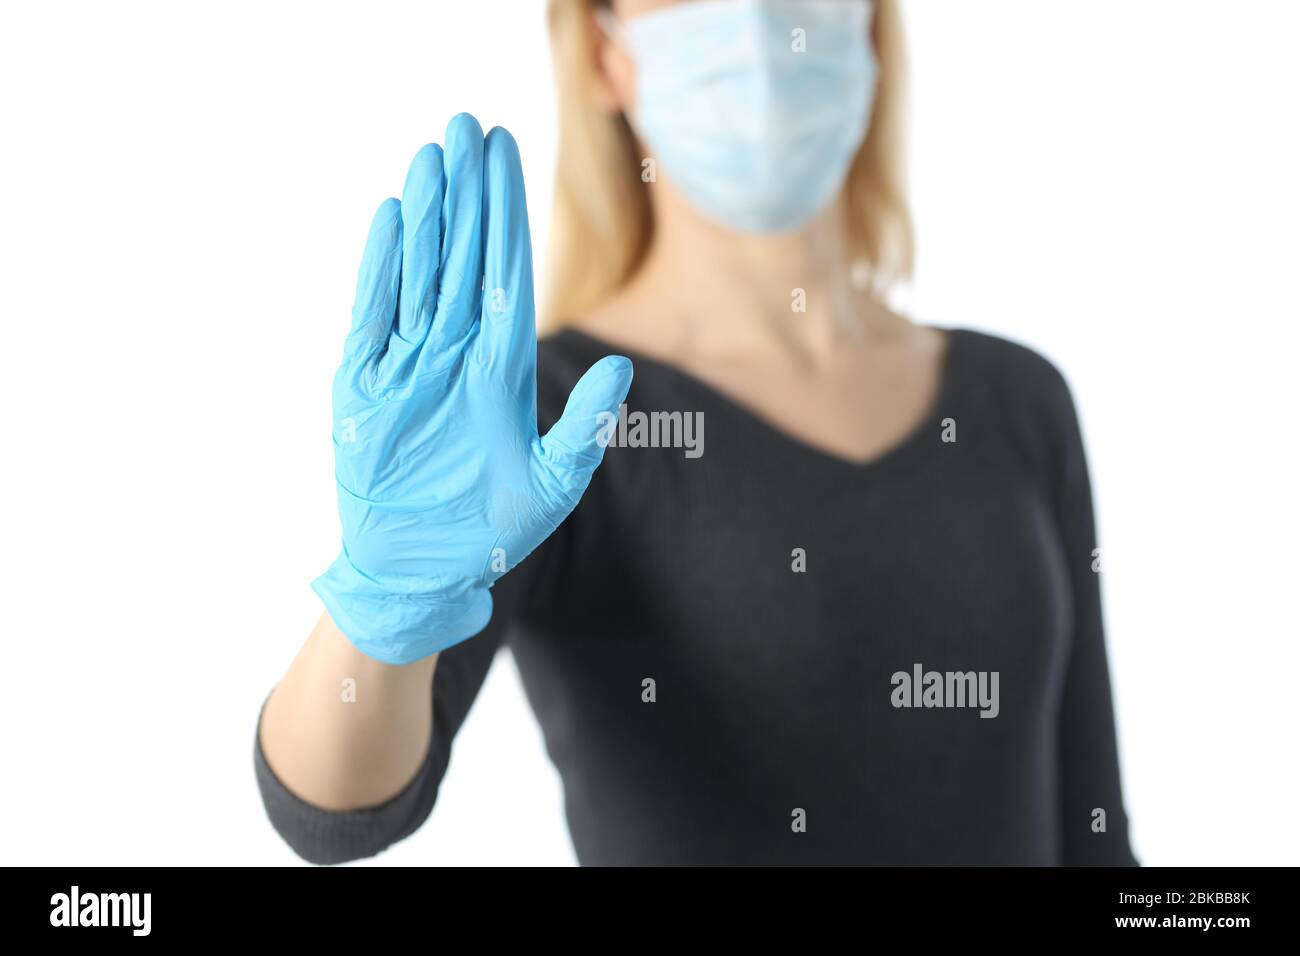 Primo piano della mano ragazza di gesturing stop evitando coronavirus con maschera e guanti isolati su sfondo bianco Foto Stock